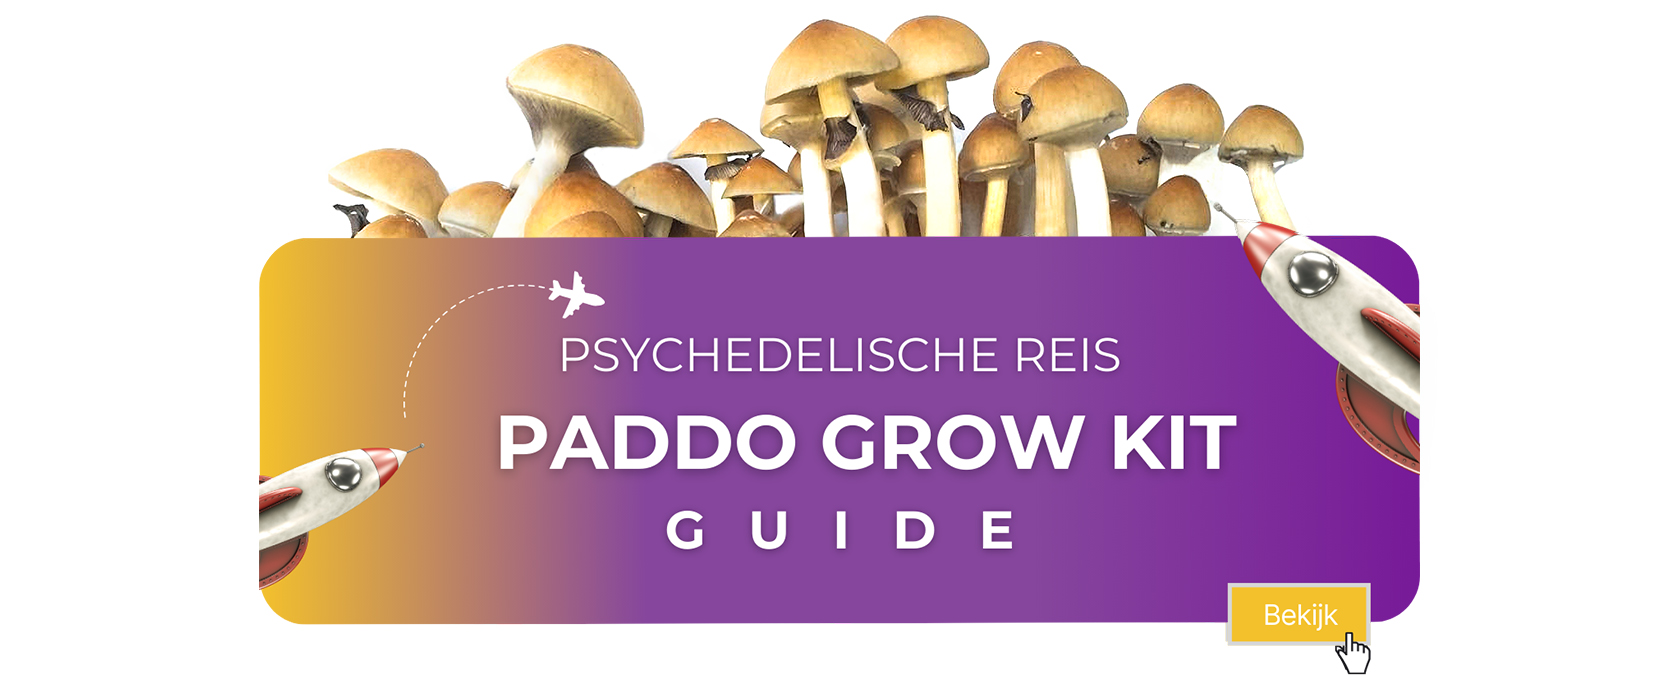 grow kit Guide - NL.jpg